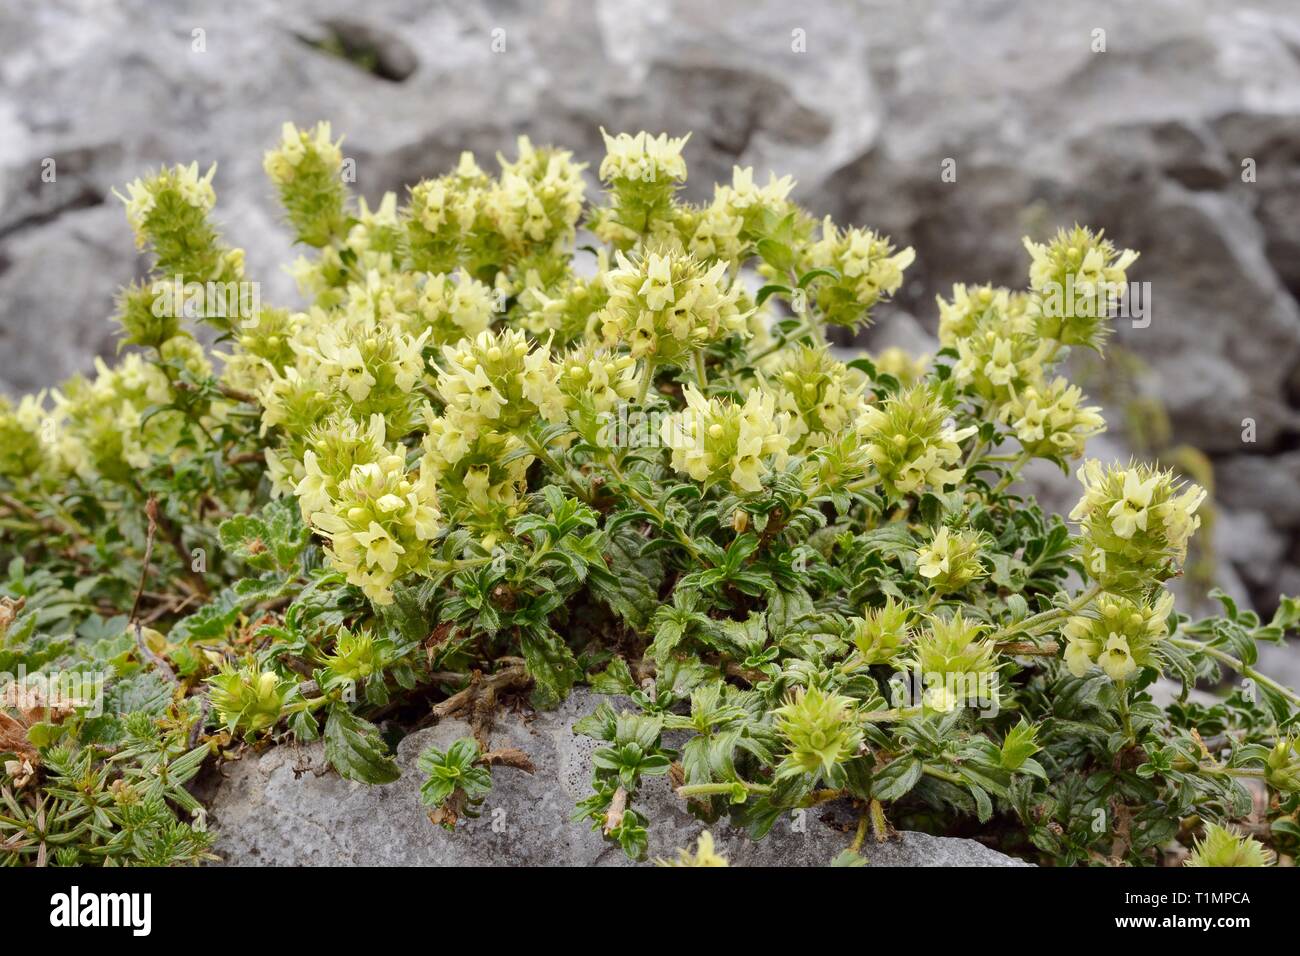 Montaña Hyssop-Leafed / té té de roca / Ironwort (Sideritis hyssopifolia) floración en la ladera de una montaña de roca en una grieta, Picos de Europa, España. Foto de stock